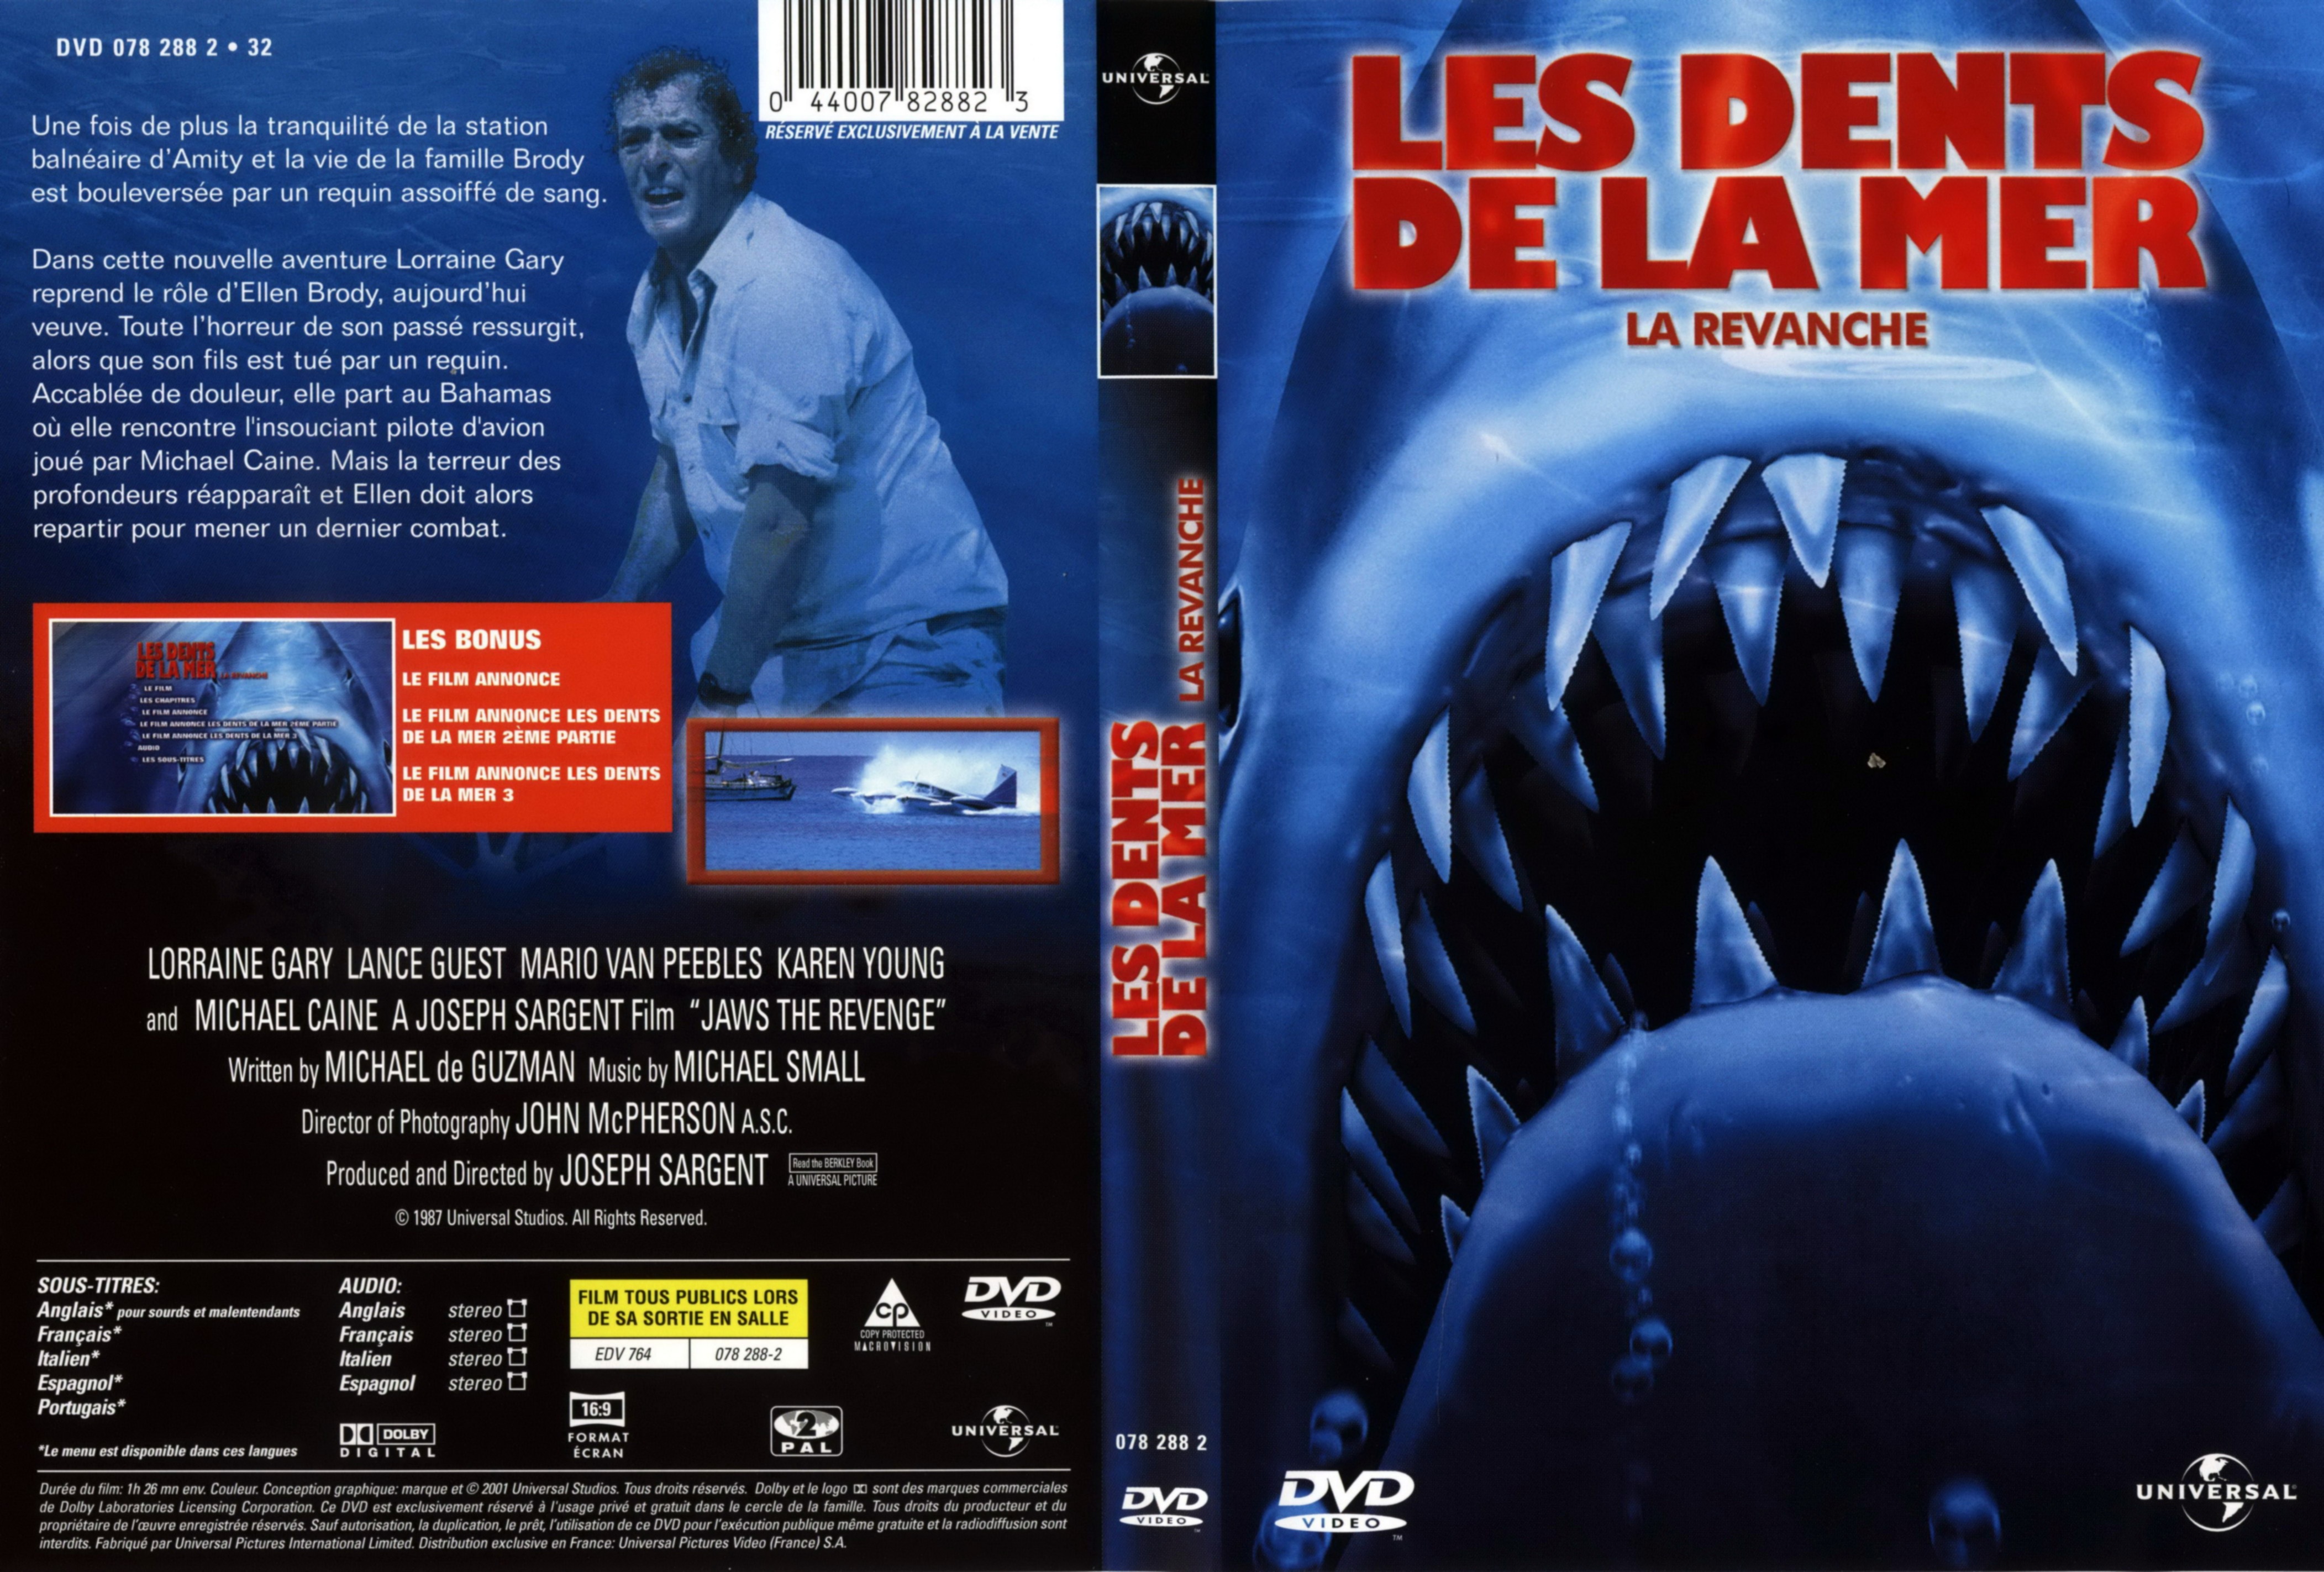 Jaquette DVD Les dents de la mer 4